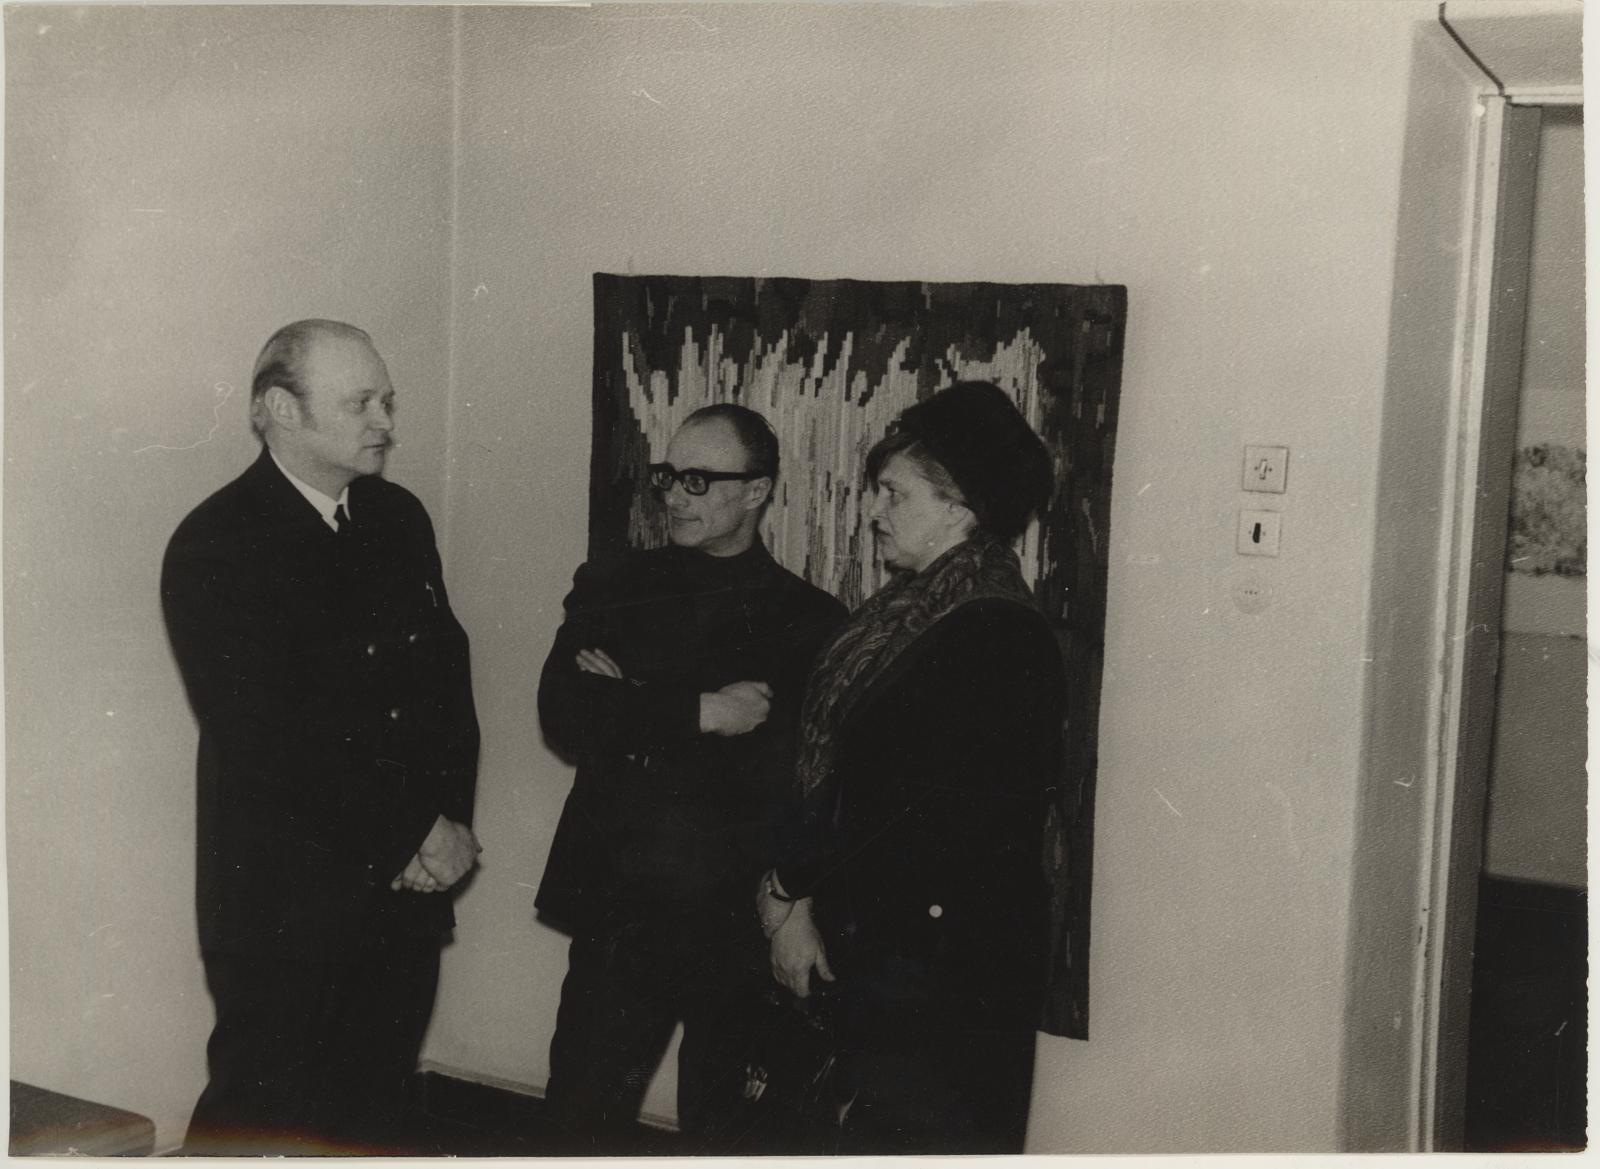 ENSV teenelise kunstitegelase Mari Adamsoni vaipade näituse avamine 20.03.1970. I korrusel. Tarbekunstnikud Endel Valk-Falk (vasakul) ja Eha Raend